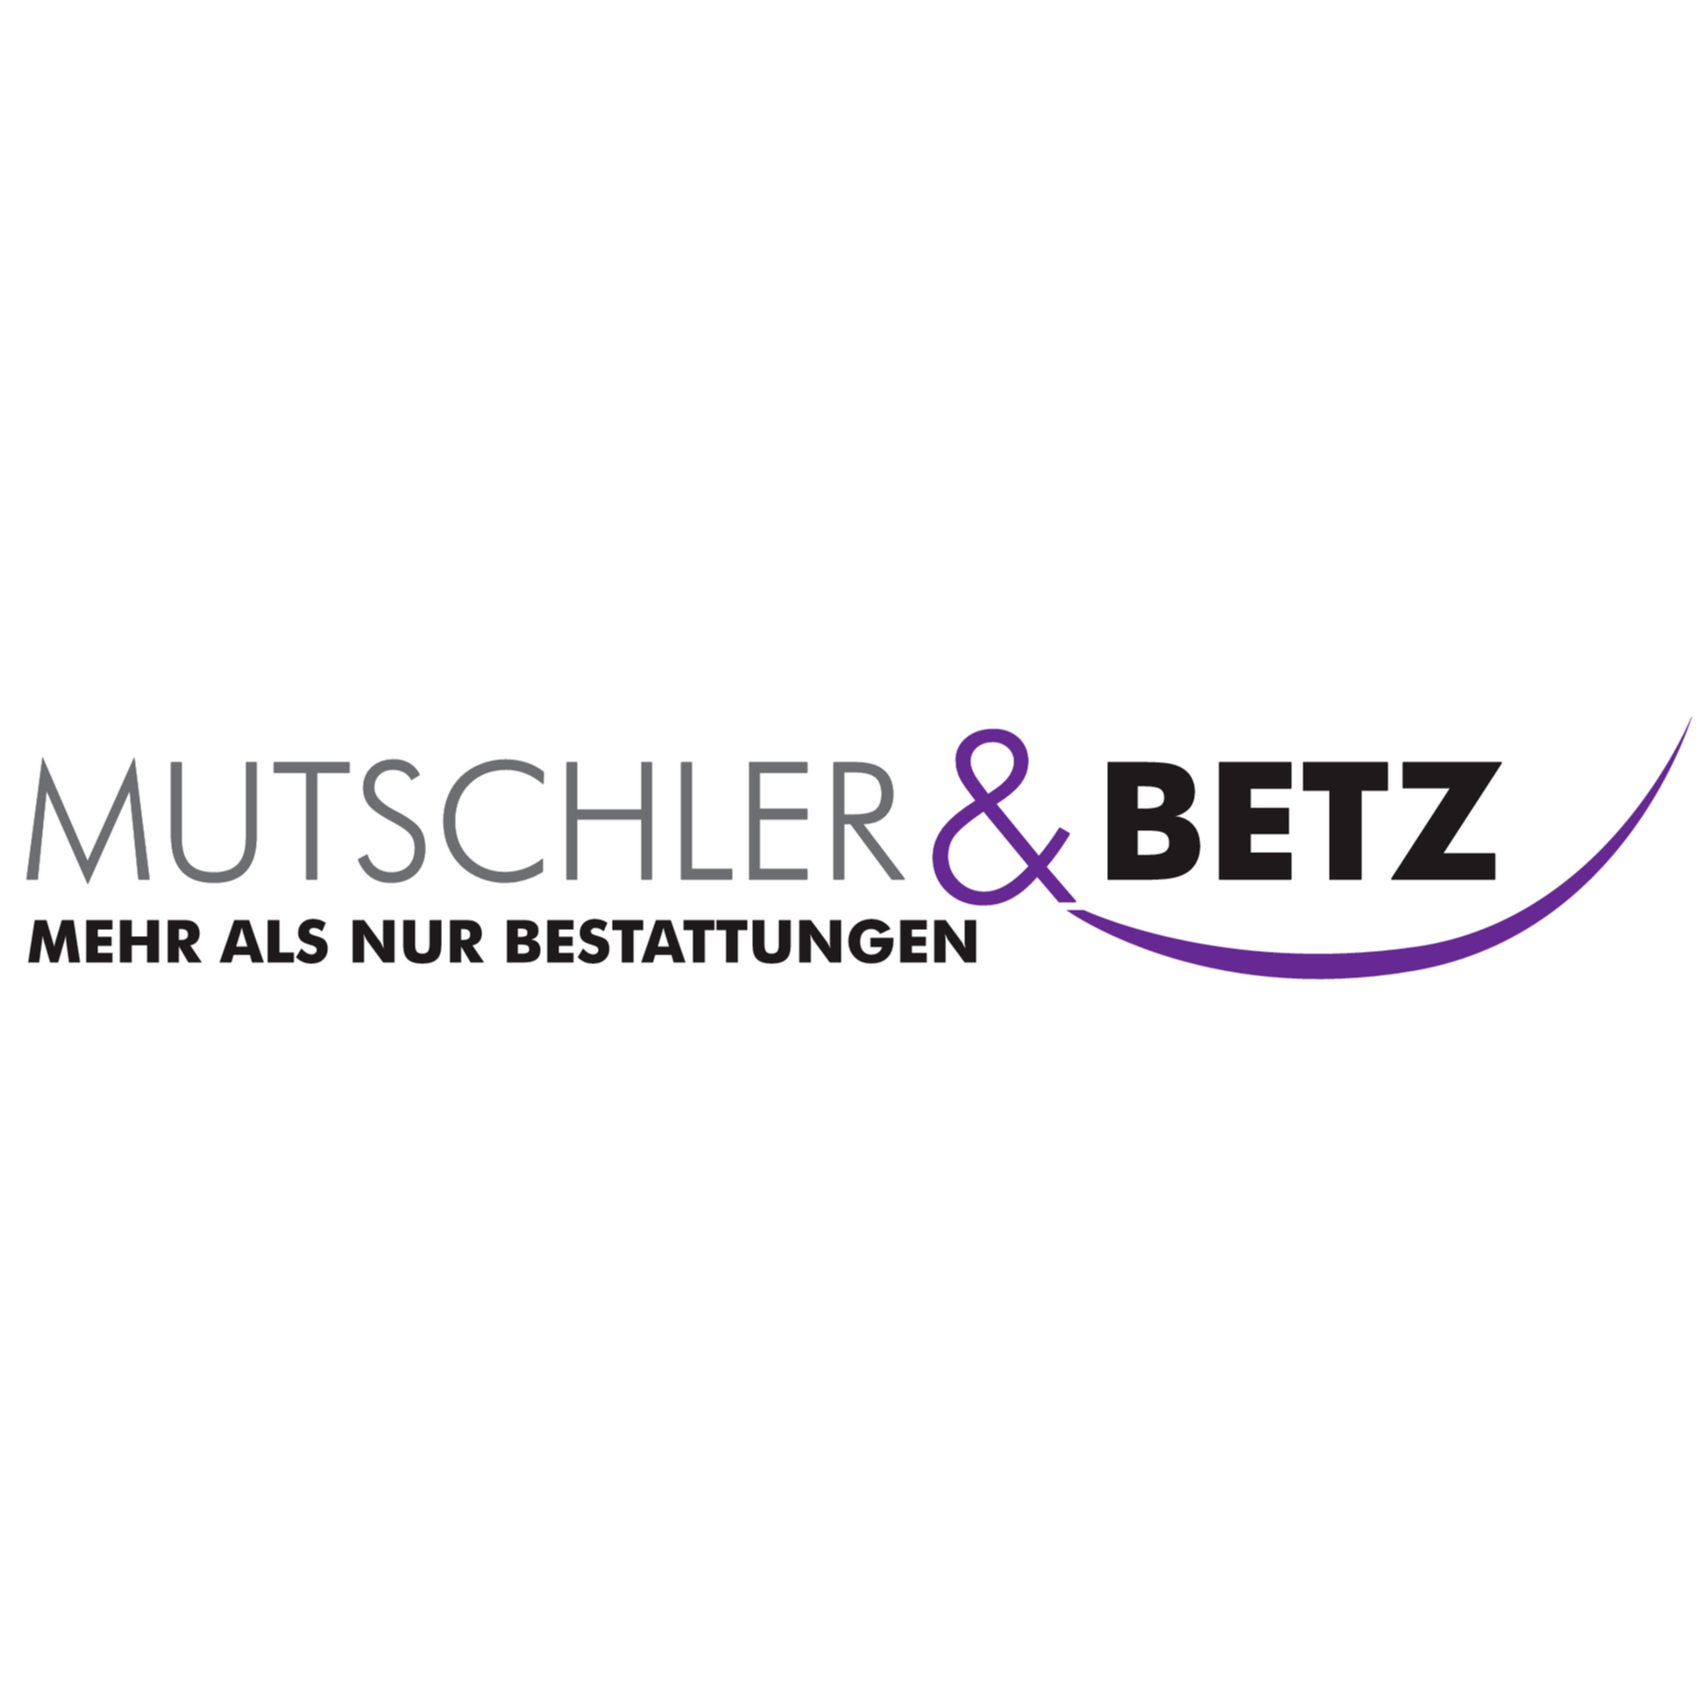 Mutschler u. Betz Bestattungsunternehmen in Pfullingen - Logo